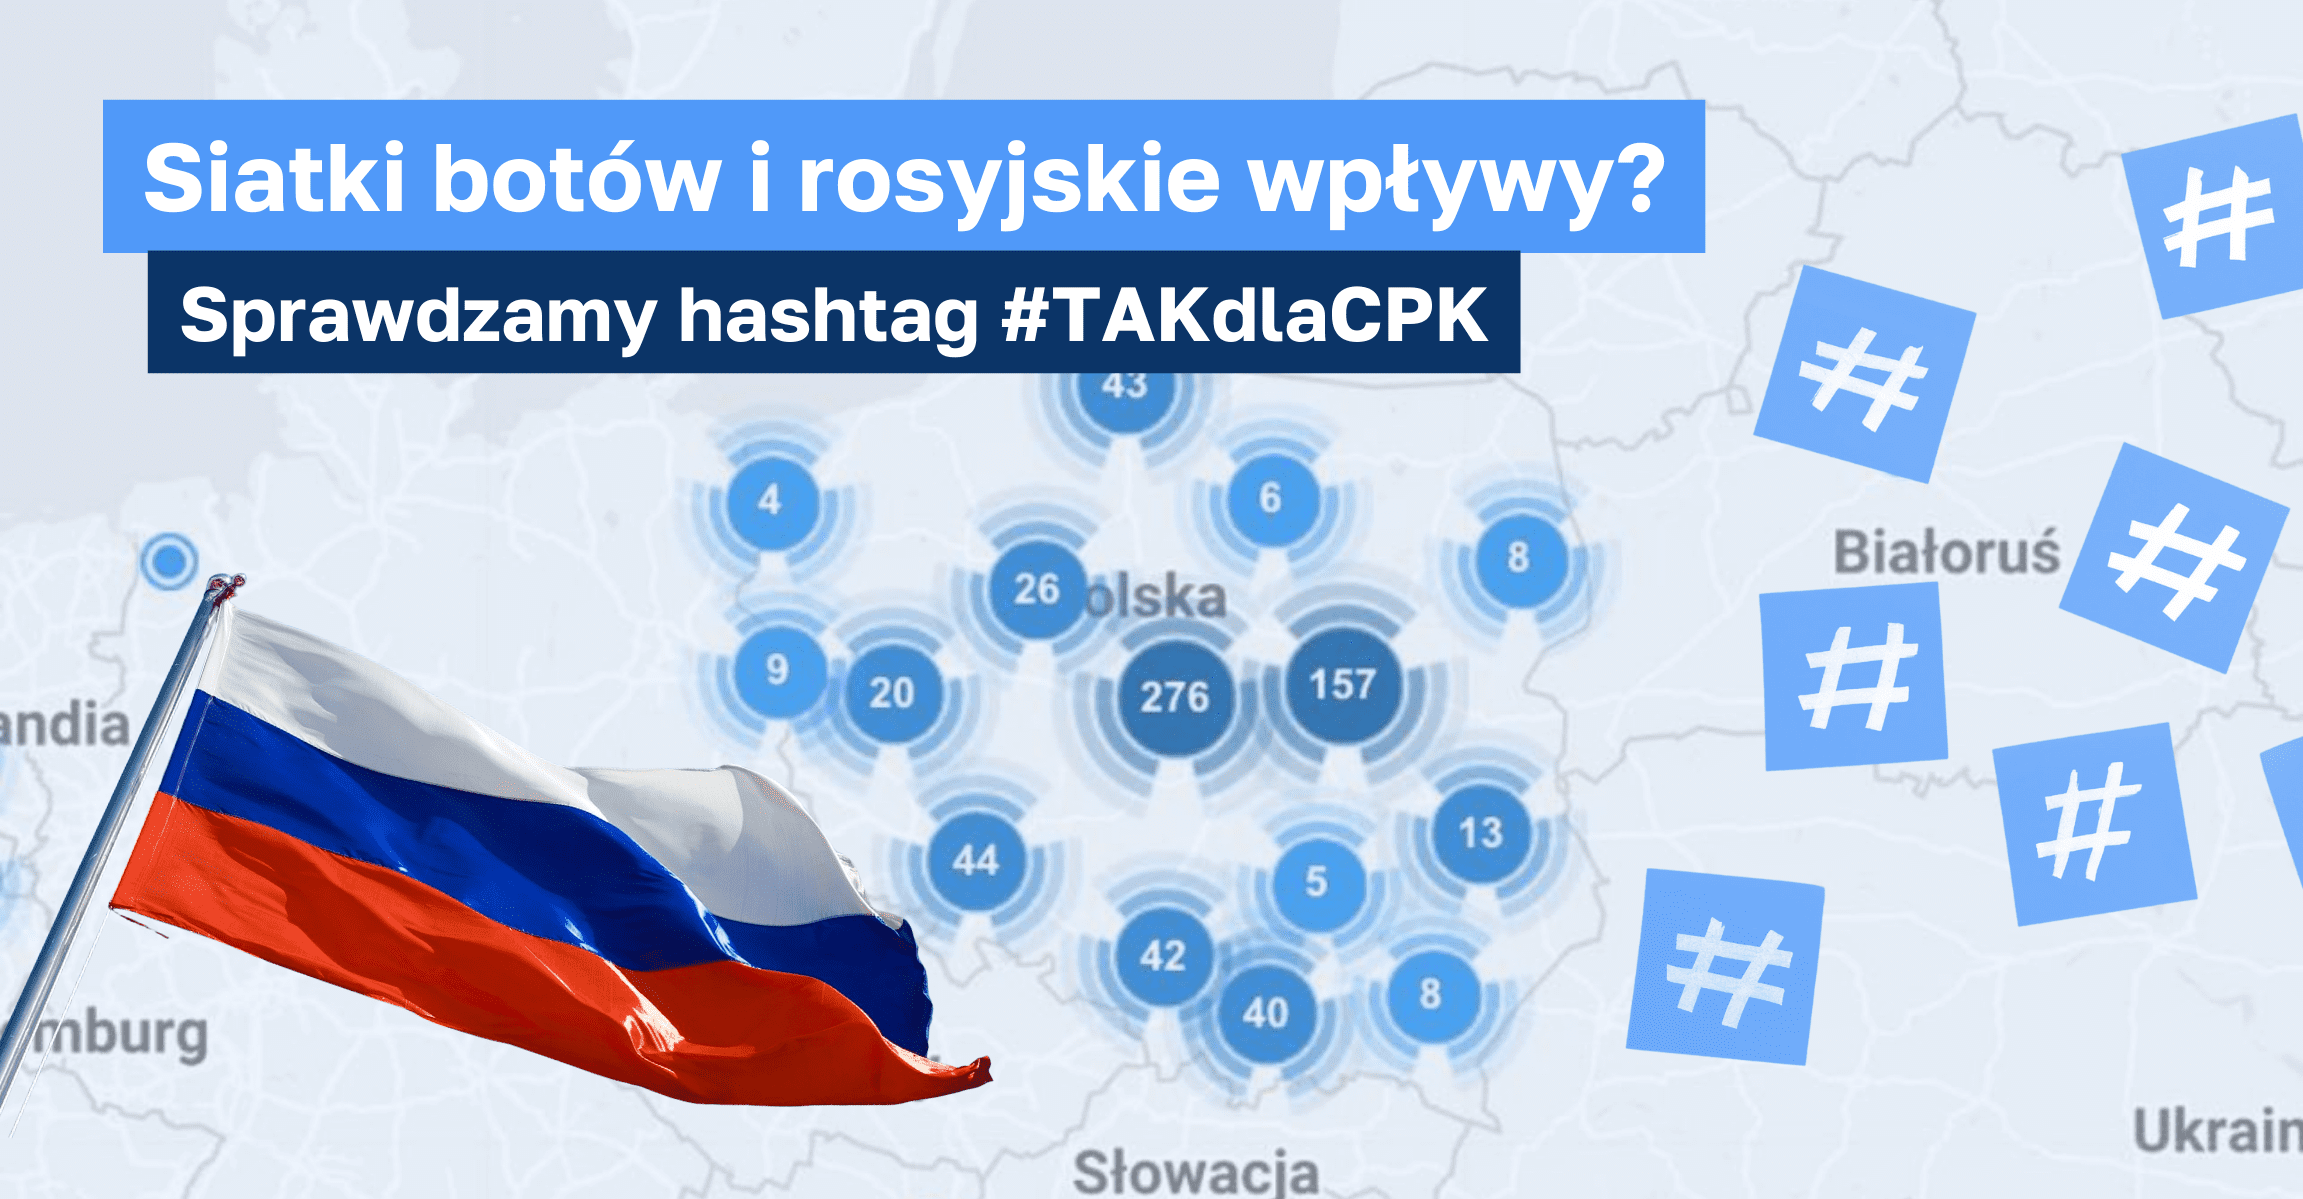 Siatki botów i rosyjskie wpływy? Sprawdzamy hashtag #TAKdlaCPK. W tle mapa Polski z wyróżnionymi punktami, które wypełniają liczby. Po lewej rosyjska flaga (biało-niebiesko-czerwona). Po prawej białe hashtagi na niebieskim tle.